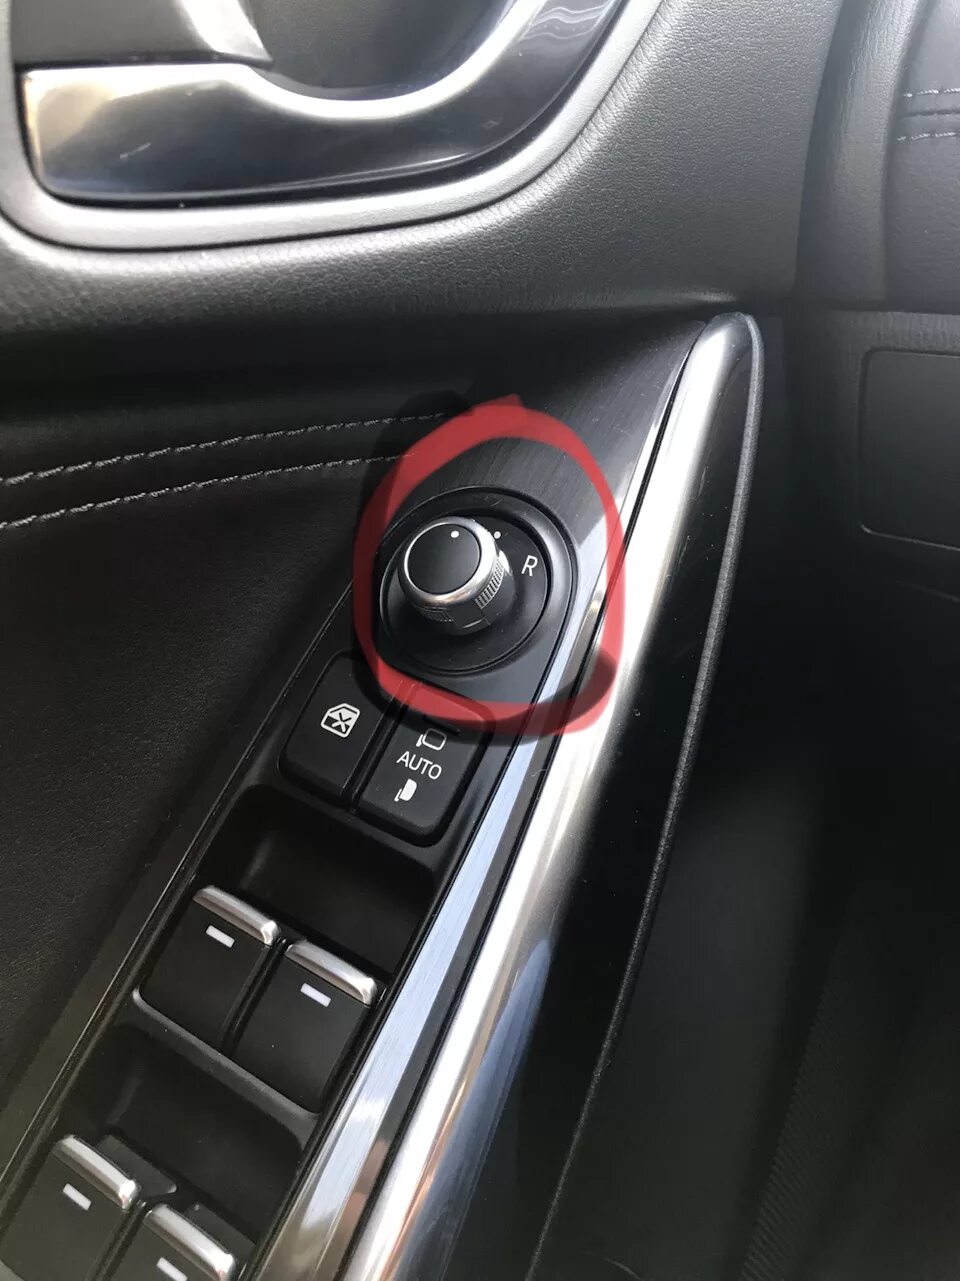 Складывание зеркал мазда 6. Кнопка складывания зеркал Мазда 6. Mazda 3 переключатель зеркал. Мазда 6 кнопка открывания зеркал. Привод складывания зеркал Мазда 3 2014.